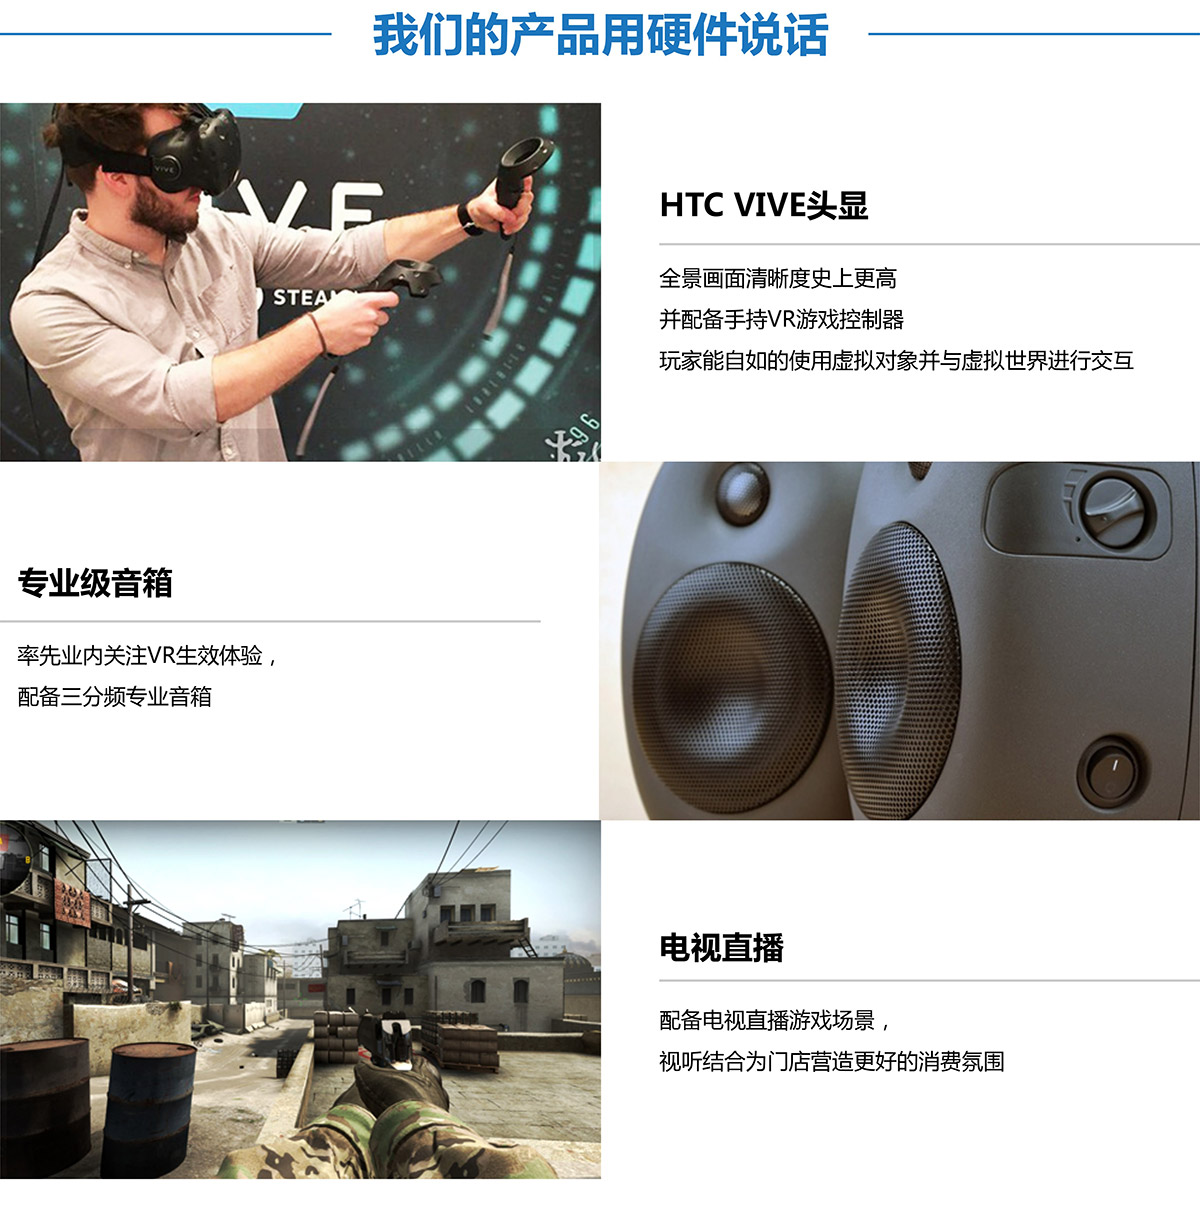 模拟安全VR探索用硬件说话.jpg